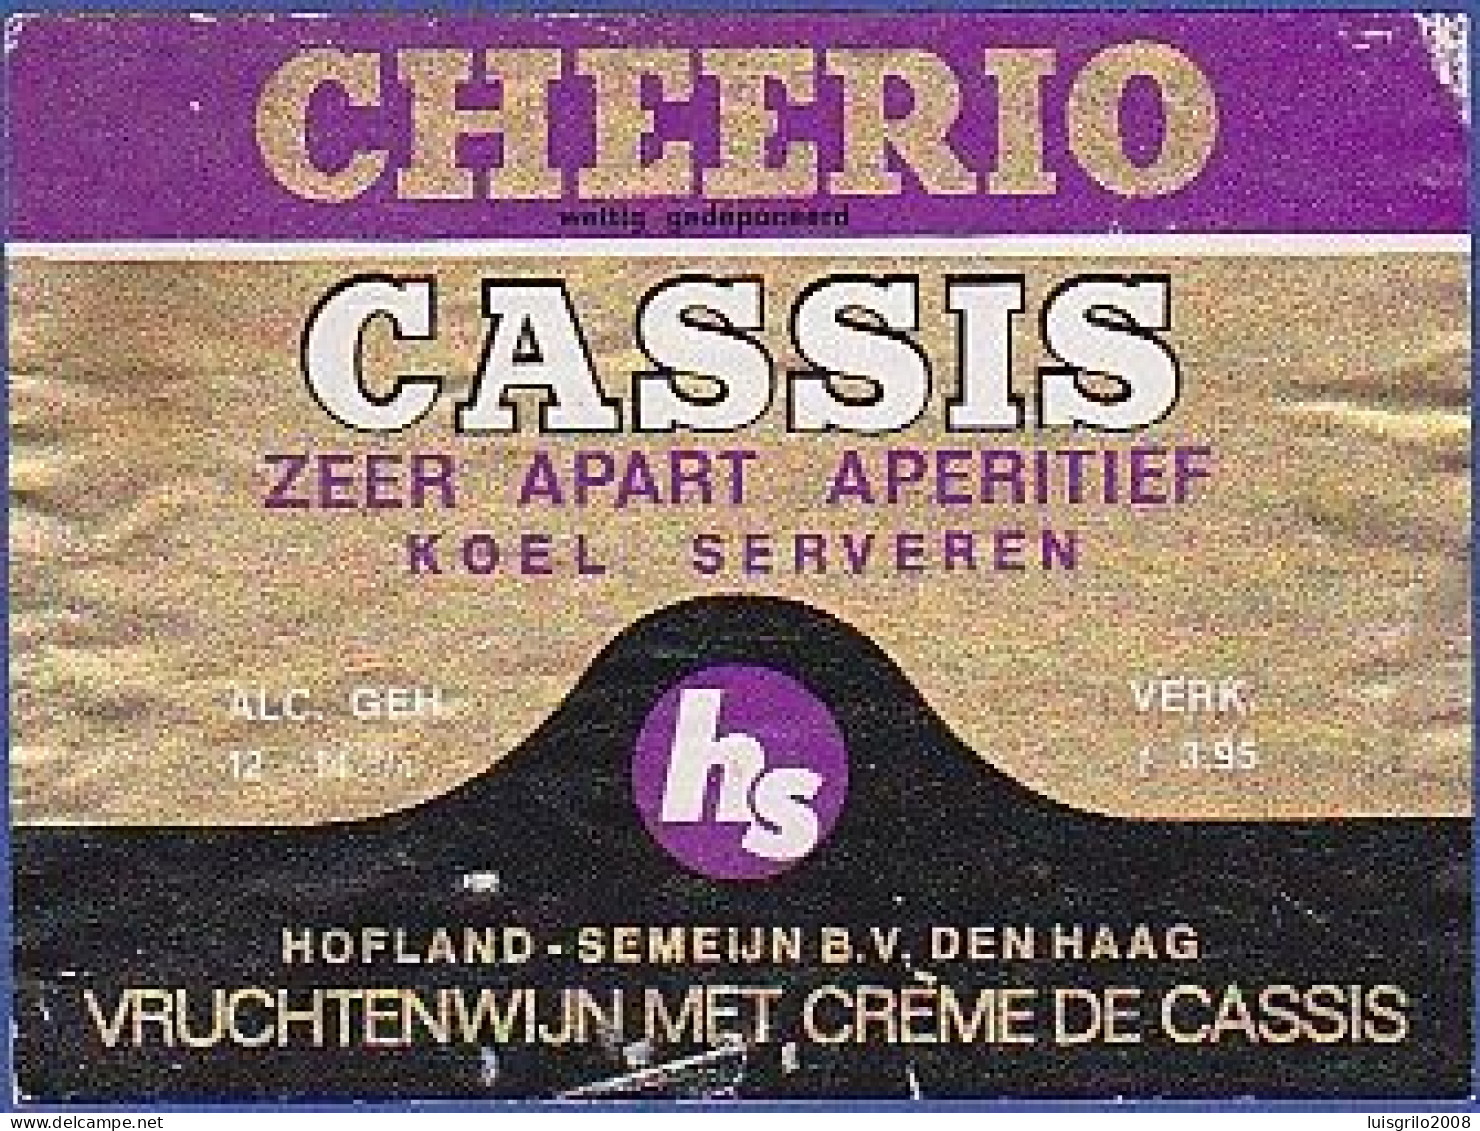 CHEERIO - CASSIS. Zeer Apart Aperitif. Koel Serveren -|- Vruchtenwijn Met Crème De Cassis - Alcoholen & Sterke Drank